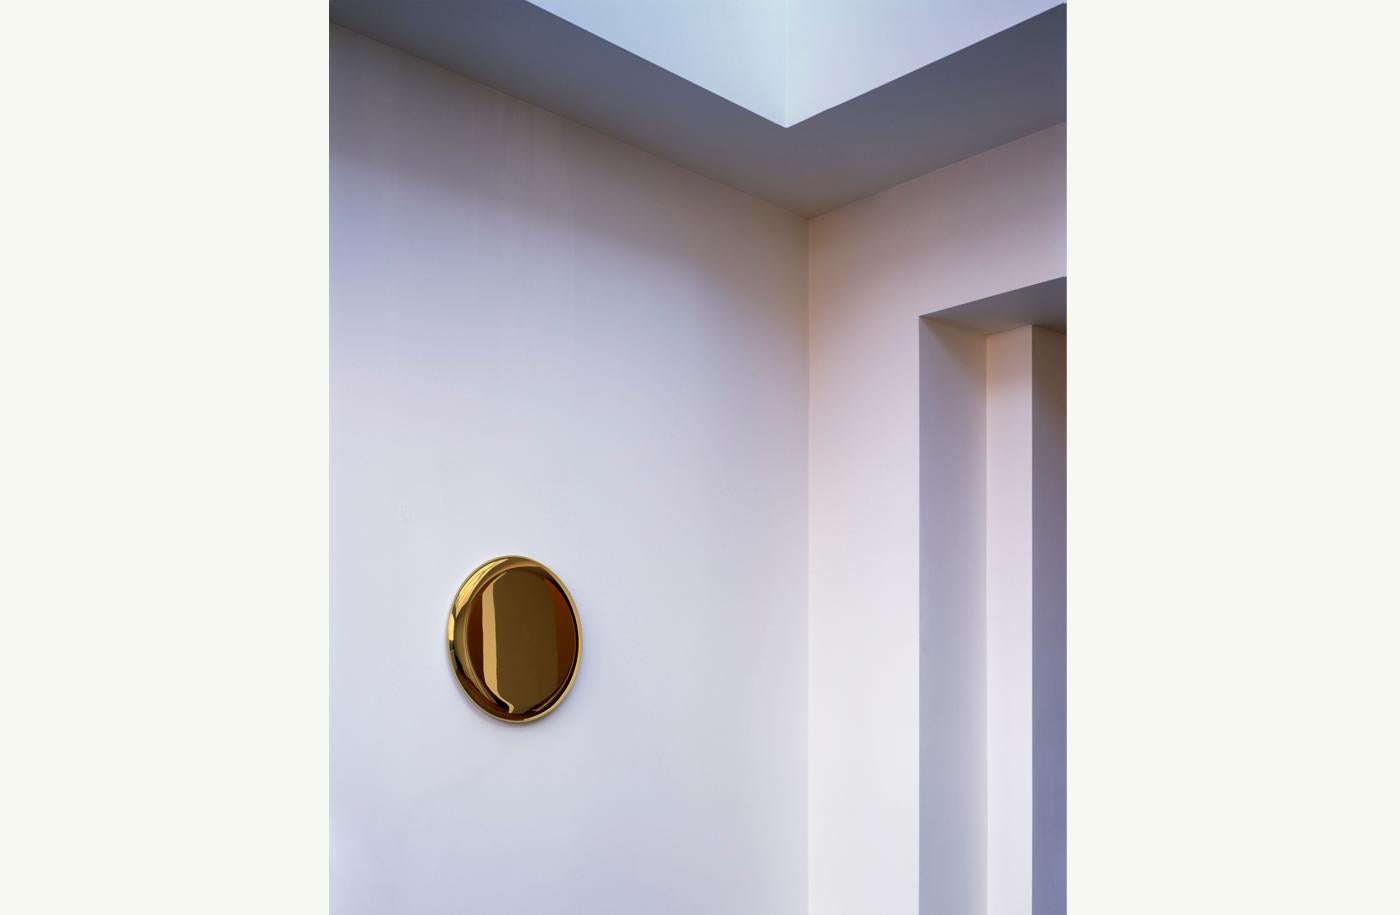 Fabriqué à la main, le miroir Beauty en laiton poli est un bijou spécial à accrocher au mur. Chaleureusement réfléchissant, le miroir Beauty est honnête envers son matériau qui fait partie intégrante du travail de l'artiste Michael Anastassiades.
  